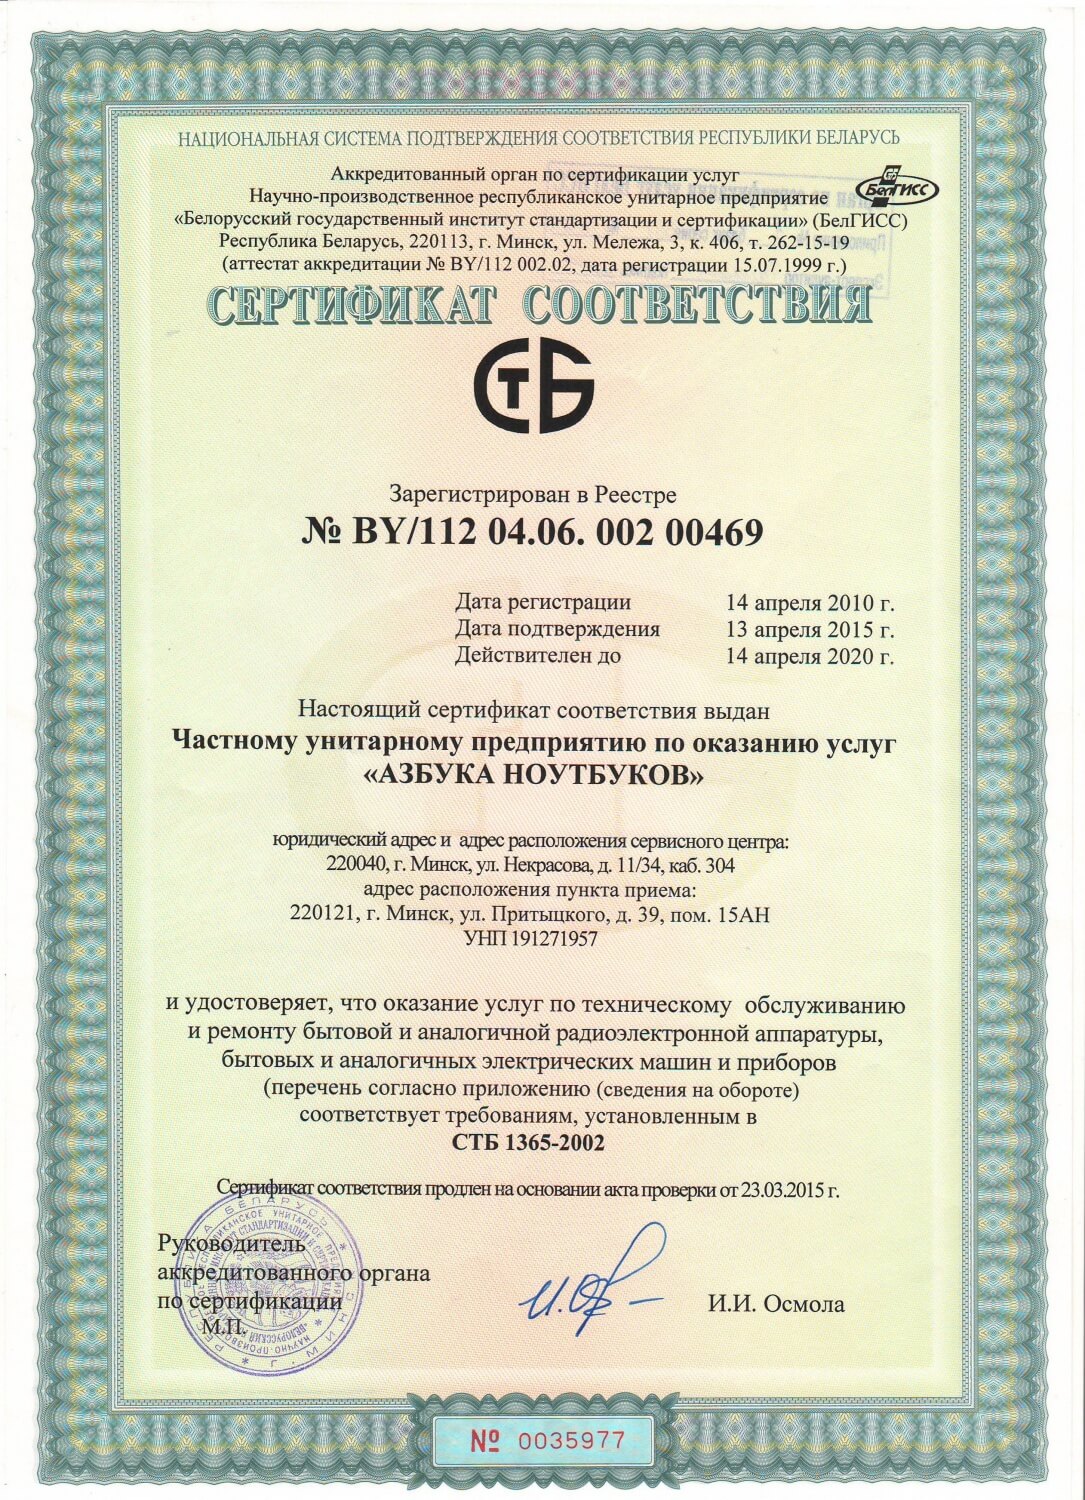 Сертификат соответствия стандарту СТБ1365-2002.